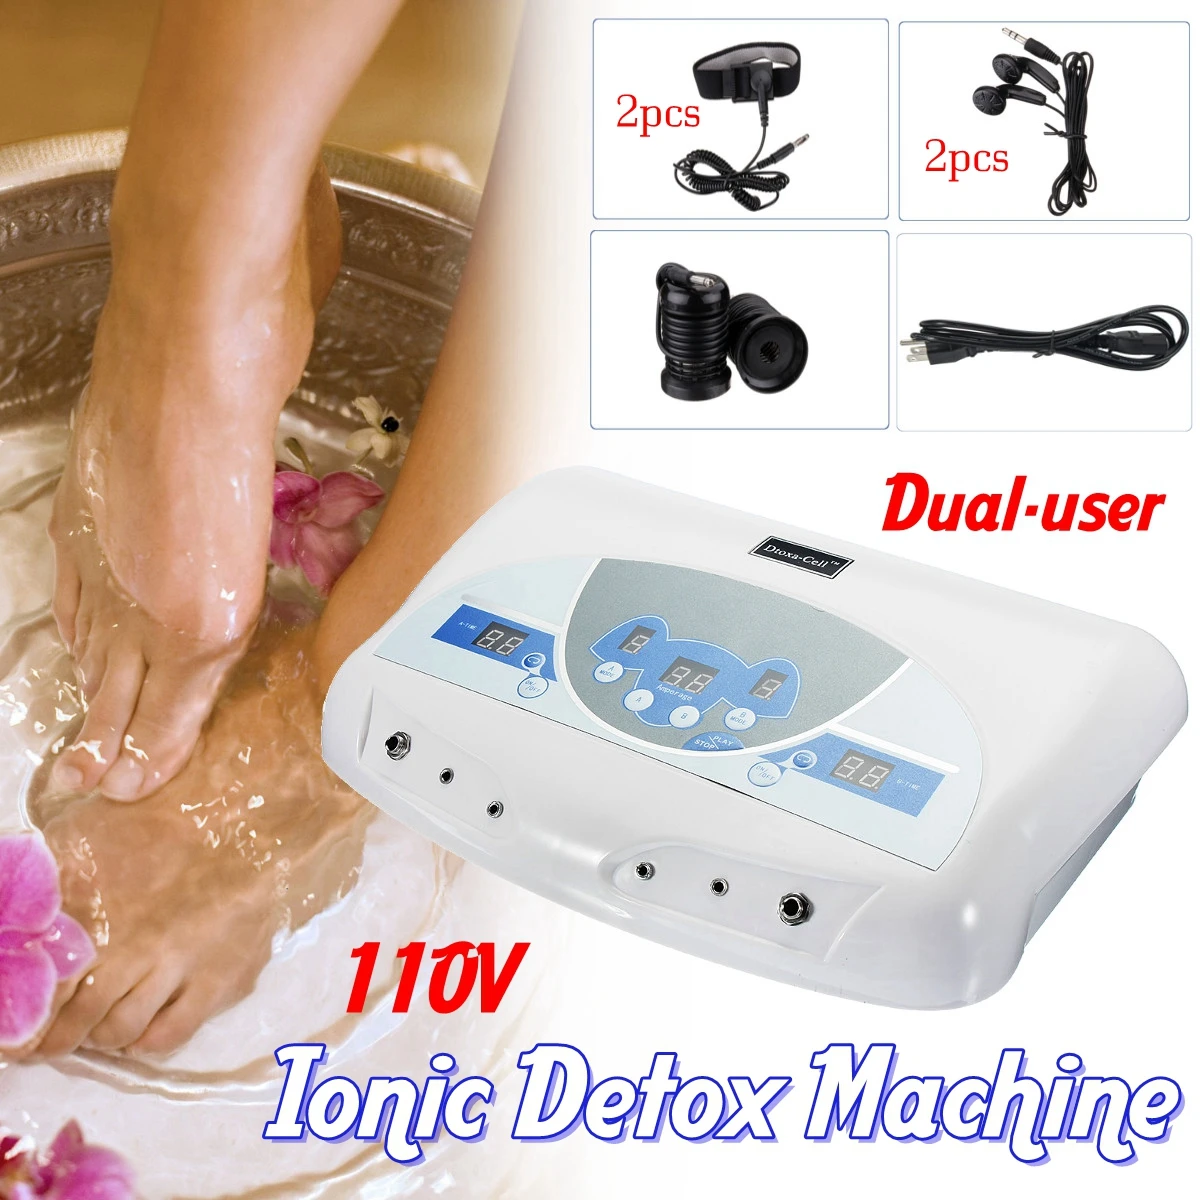 Двойной пользователя машина для детоксикации с ионизацией ванночку для ванны инструмент ЖК-дисплей w/MP3 музыка очистить салон